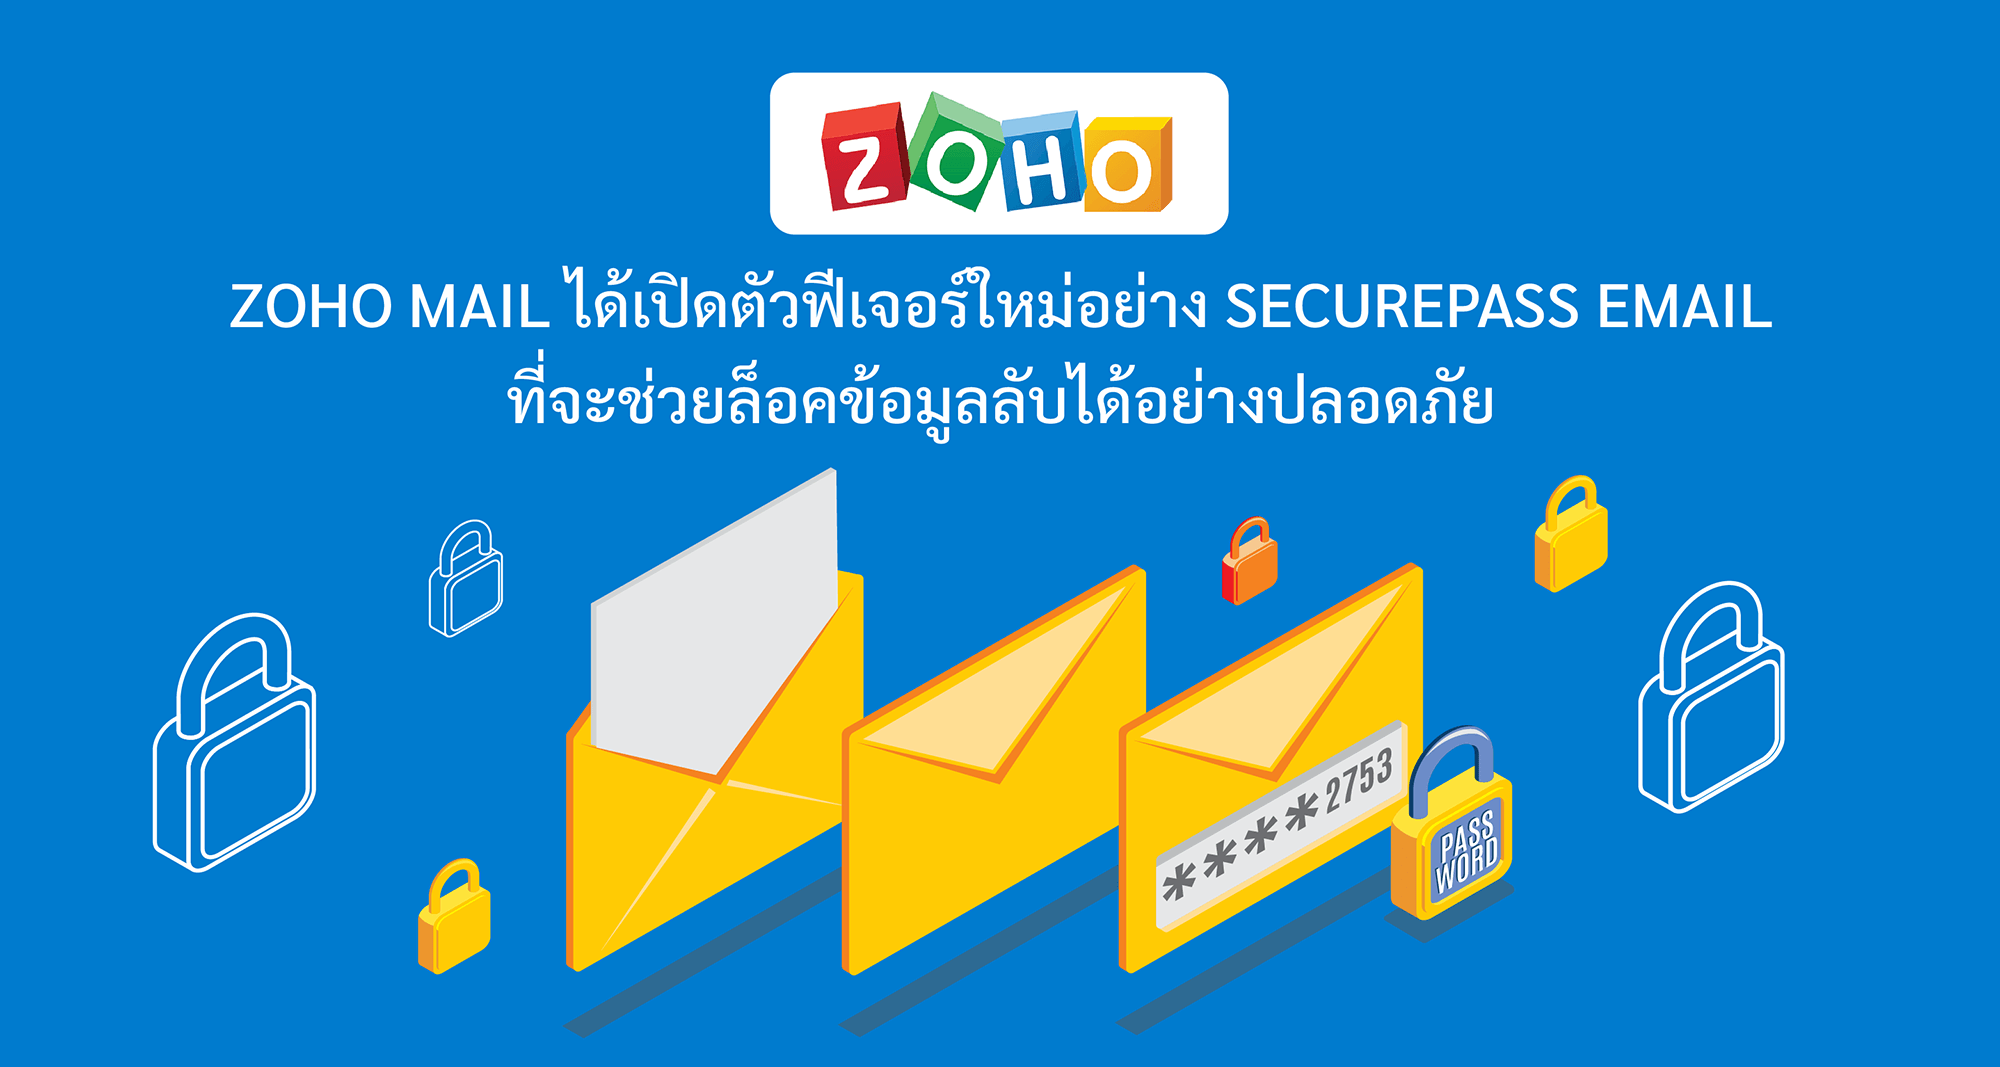 Zoho Mail ได้เปิดตัวฟีเจอร์ใหม่อย่าง SecurePass Email ที่จะช่วยล็อคข้อมูลลับได้อย่างปลอดภัย